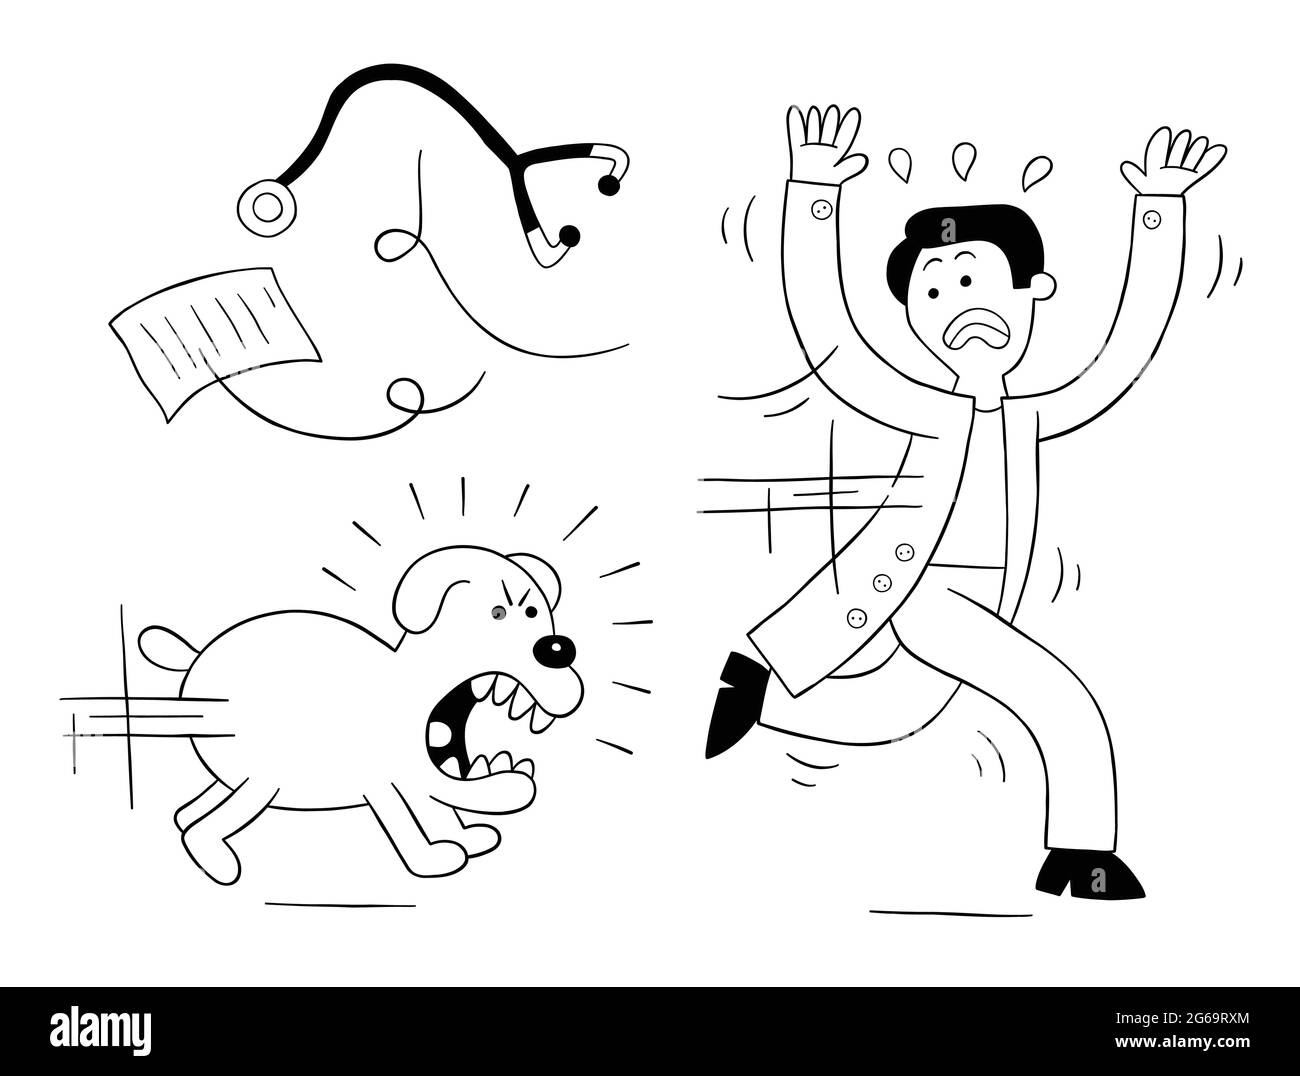 Le chien de dessin animé est très en colère et chasse le vétérinaire, illustration vectorielle. Contour noir et couleur blanche. Illustration de Vecteur